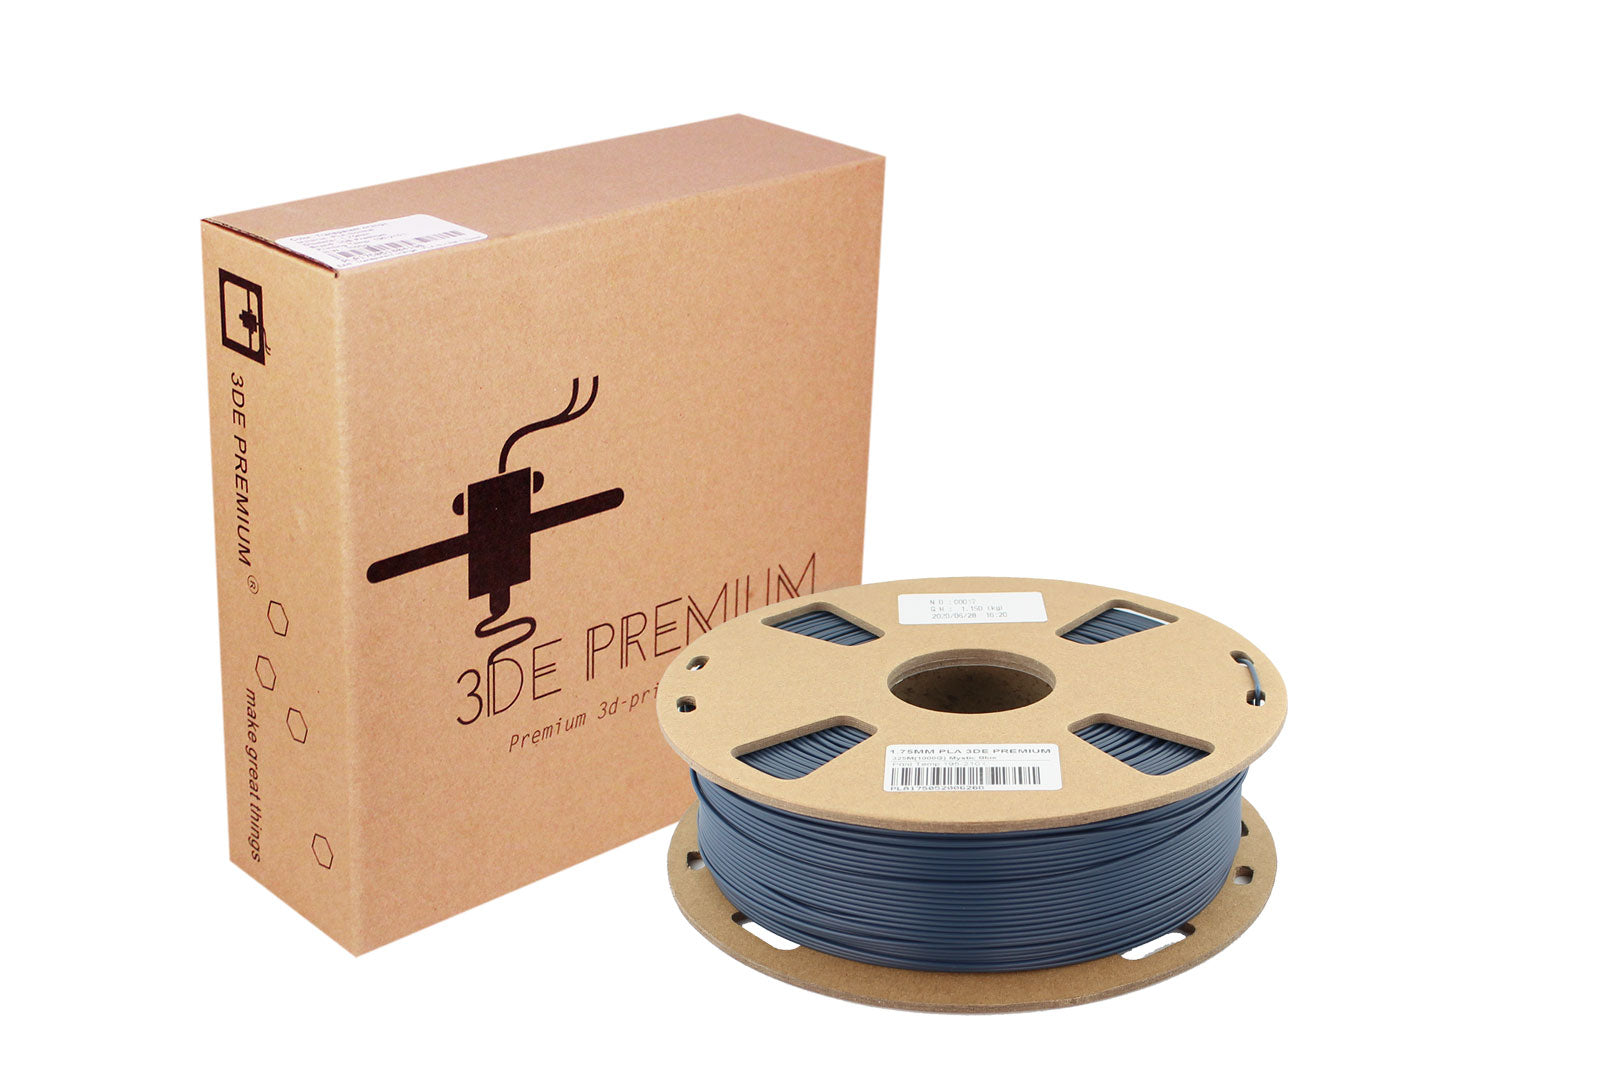 3DE Premium - PLA - Mystic Blue - 1.75mm - 1kg